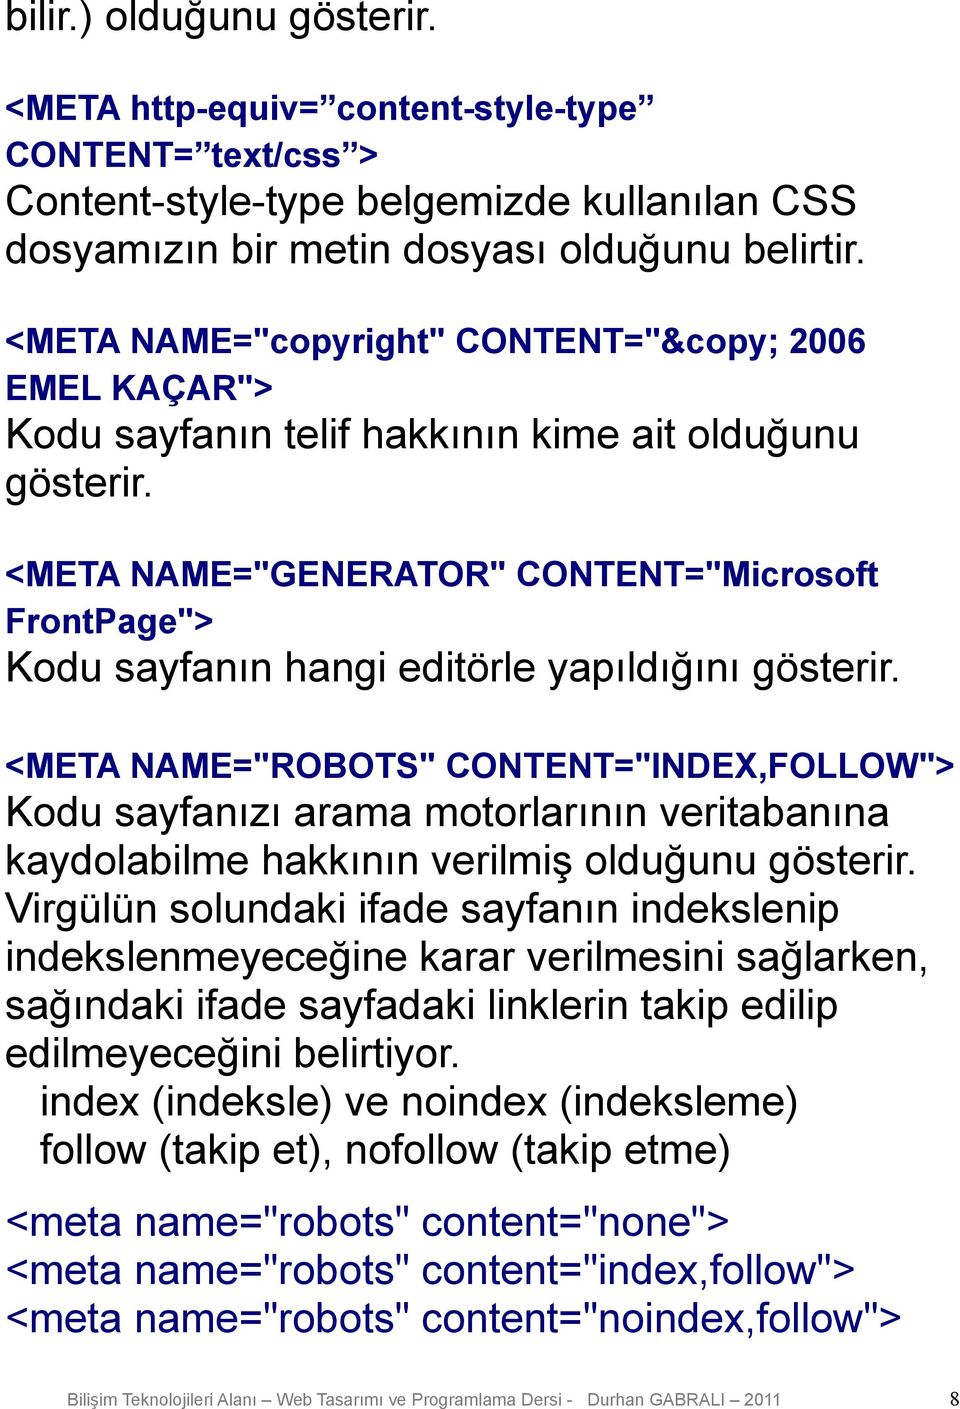 <META NAME="GENERATOR" CONTENT="Microsoft FrontPage"> Kodu sayfanın hangi editörle yapıldığını gösterir.